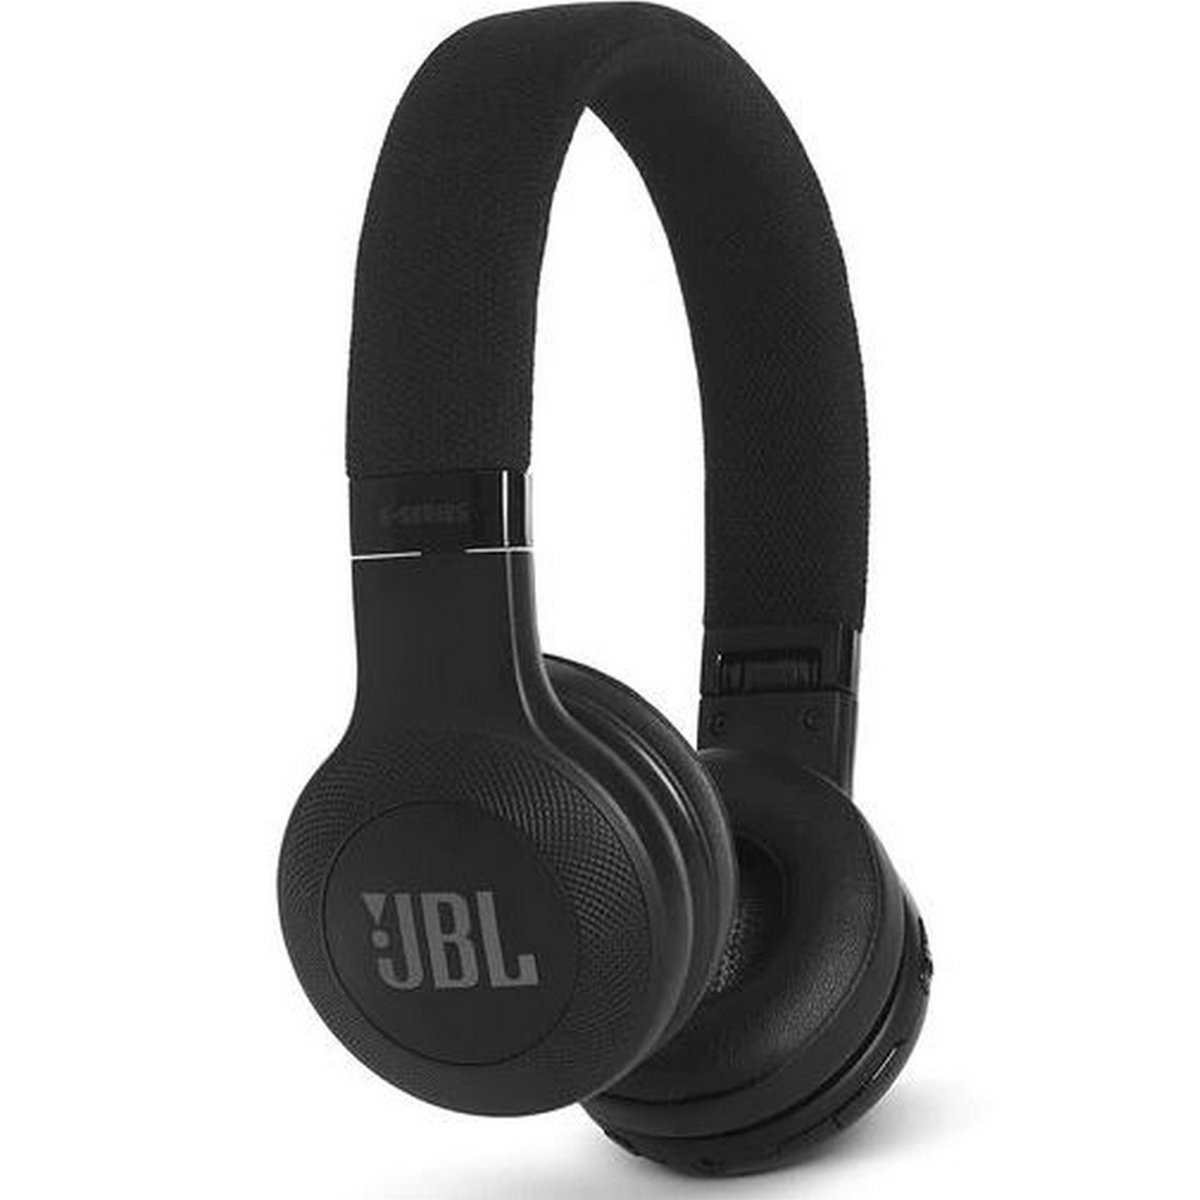 JBL Wireless On-Ear Headphone E45BT Black